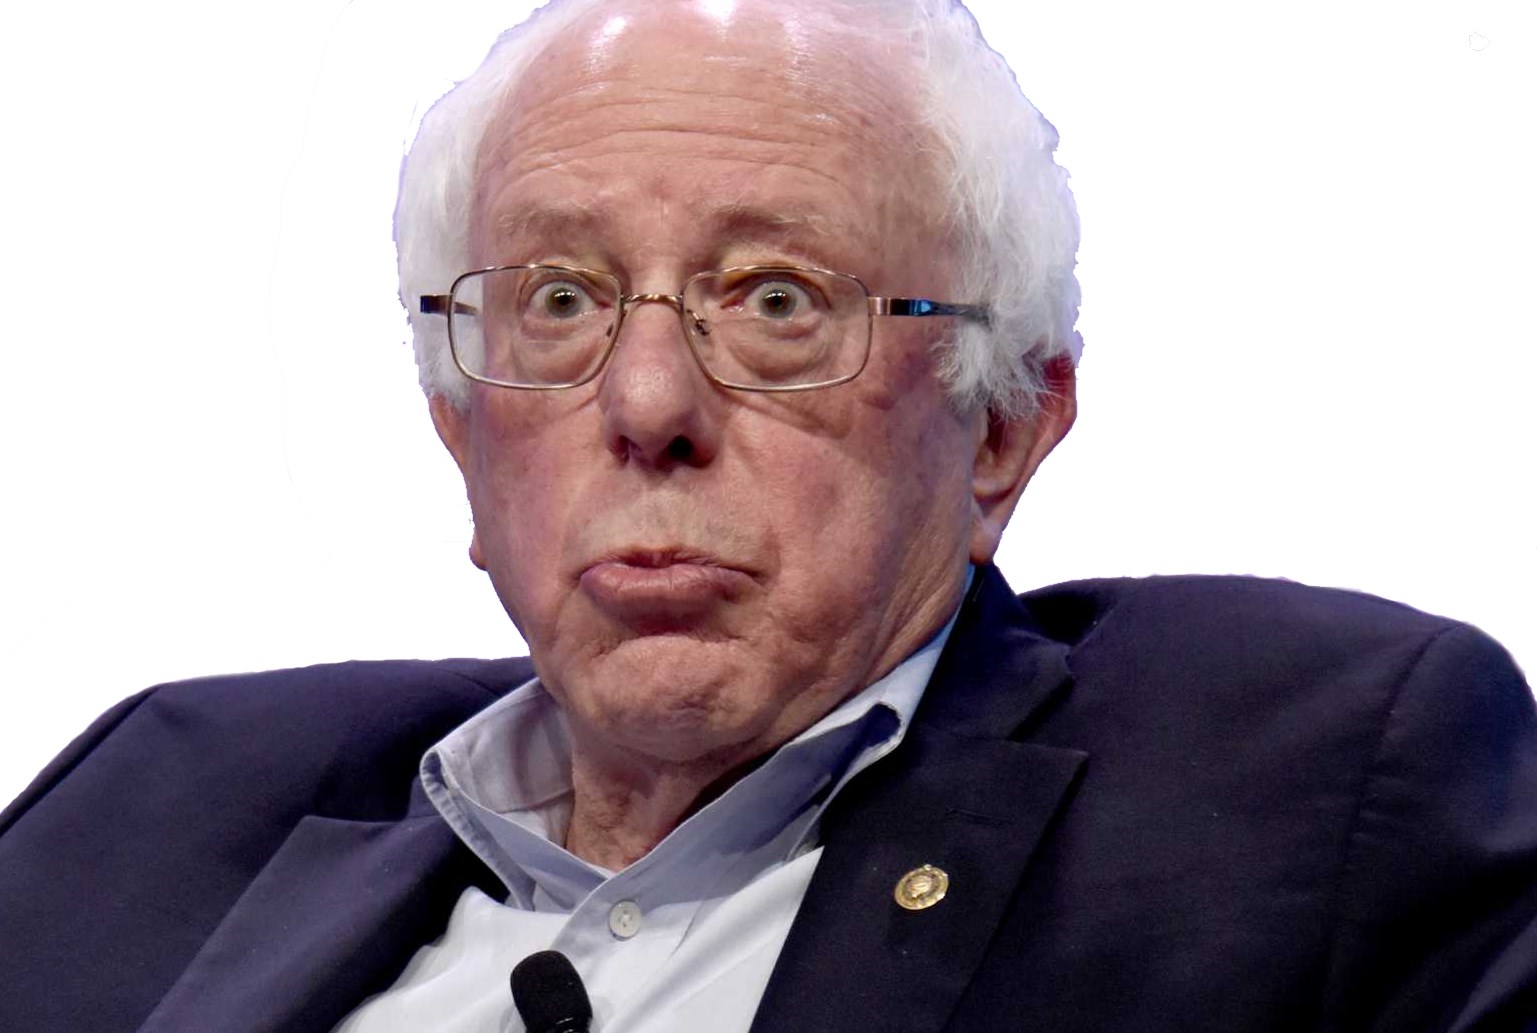 Bernie Sanders, Socialist